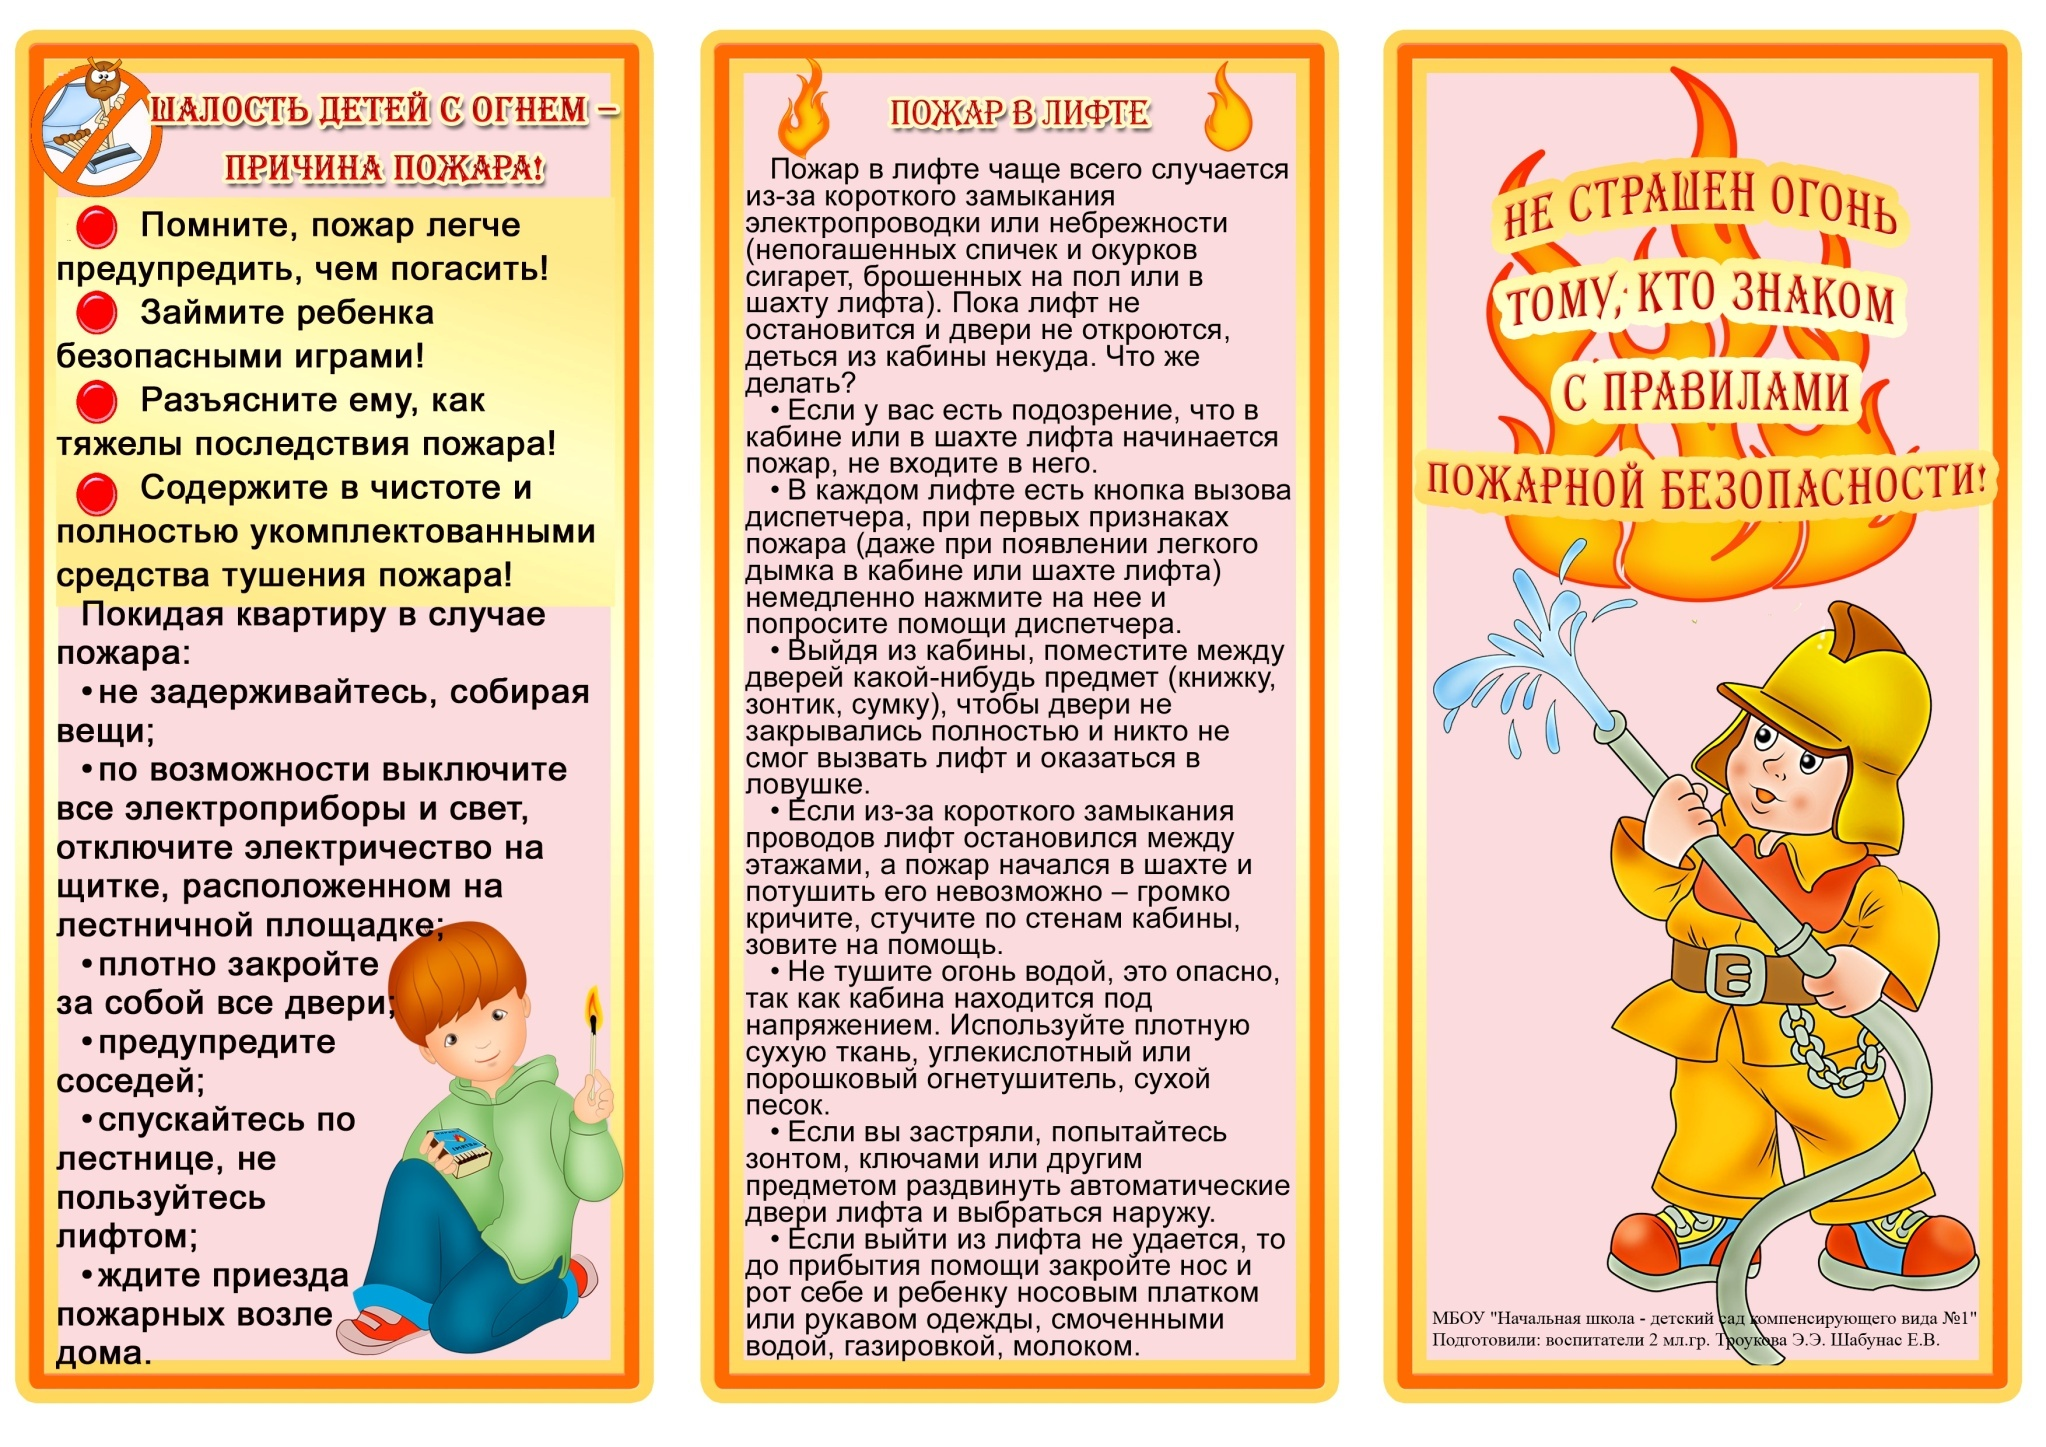 Тема недели пожарная безопасность. Буклет правила пожарной безопасности для родителей дошкольников. Брошюры для родителей по пожарной безопасности. Брошюра правила пожарной безопасности. Брошюрки по пожарной безопасности для родителей в детском саду.